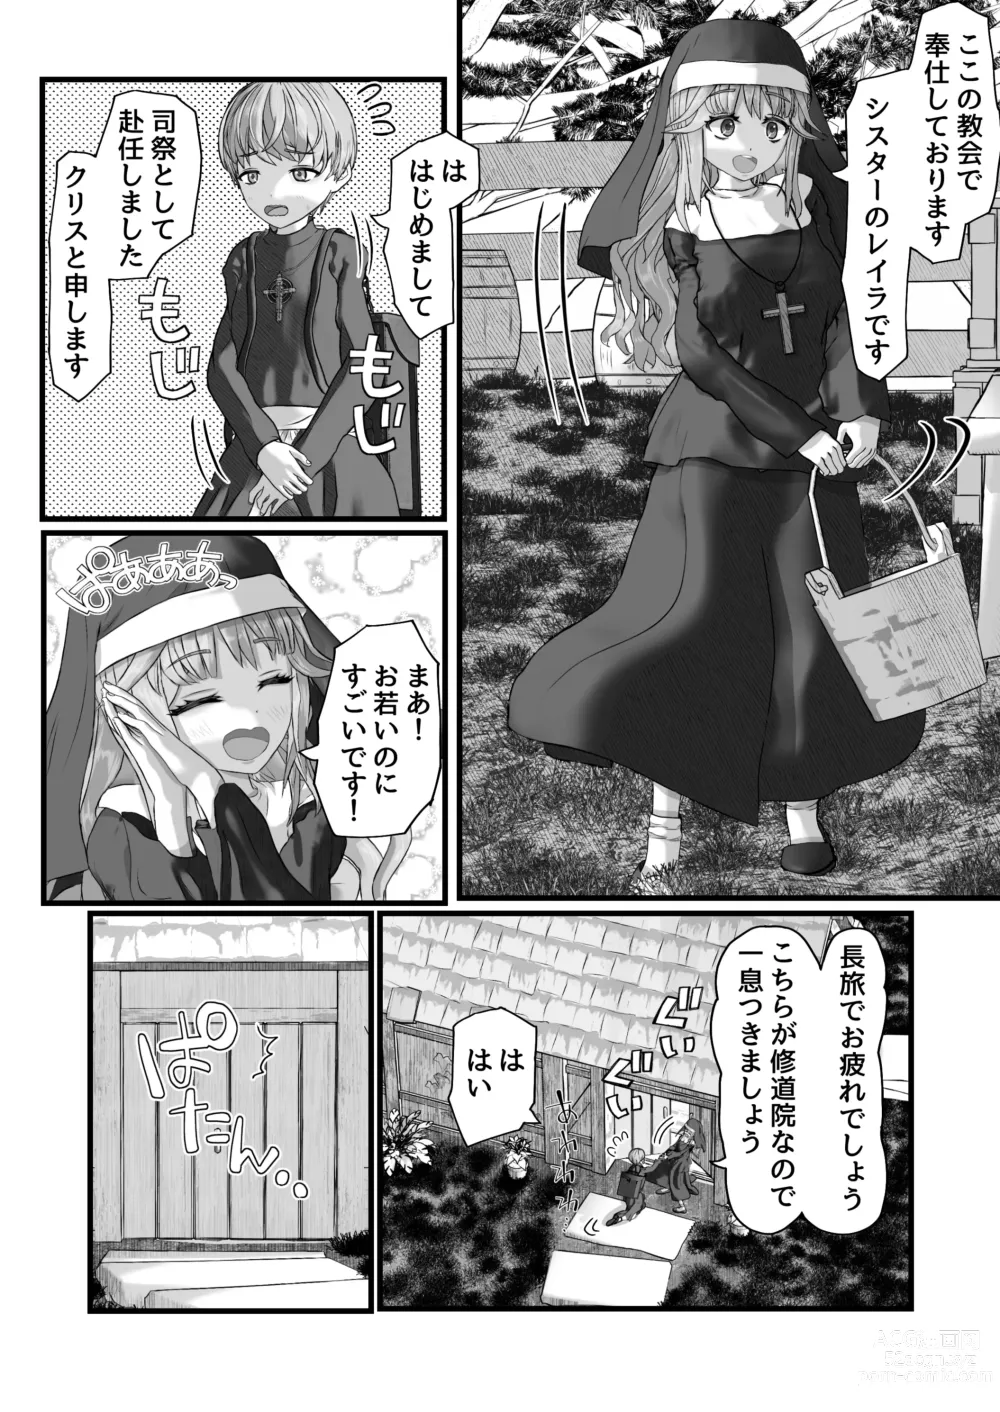 Page 6 of doujinshi Fu Honidesuga Osewa ni Natteiru Shisutā o Pantsu no ue kara ijirimasu